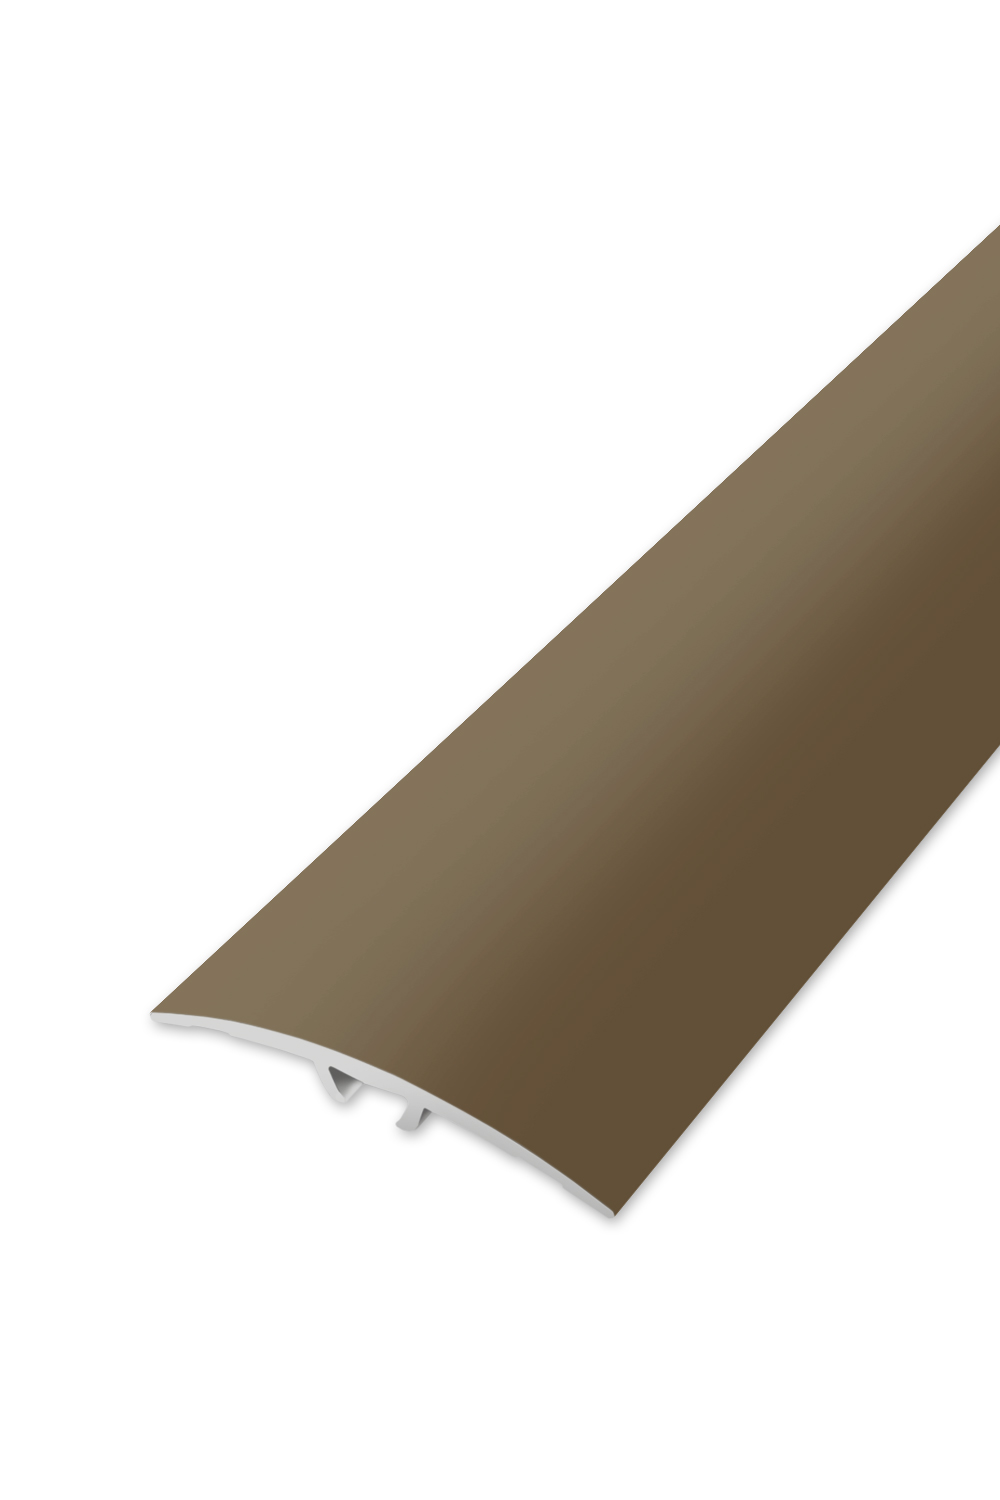 Přechodová lišta WELL 40 - Bronz 270 cm